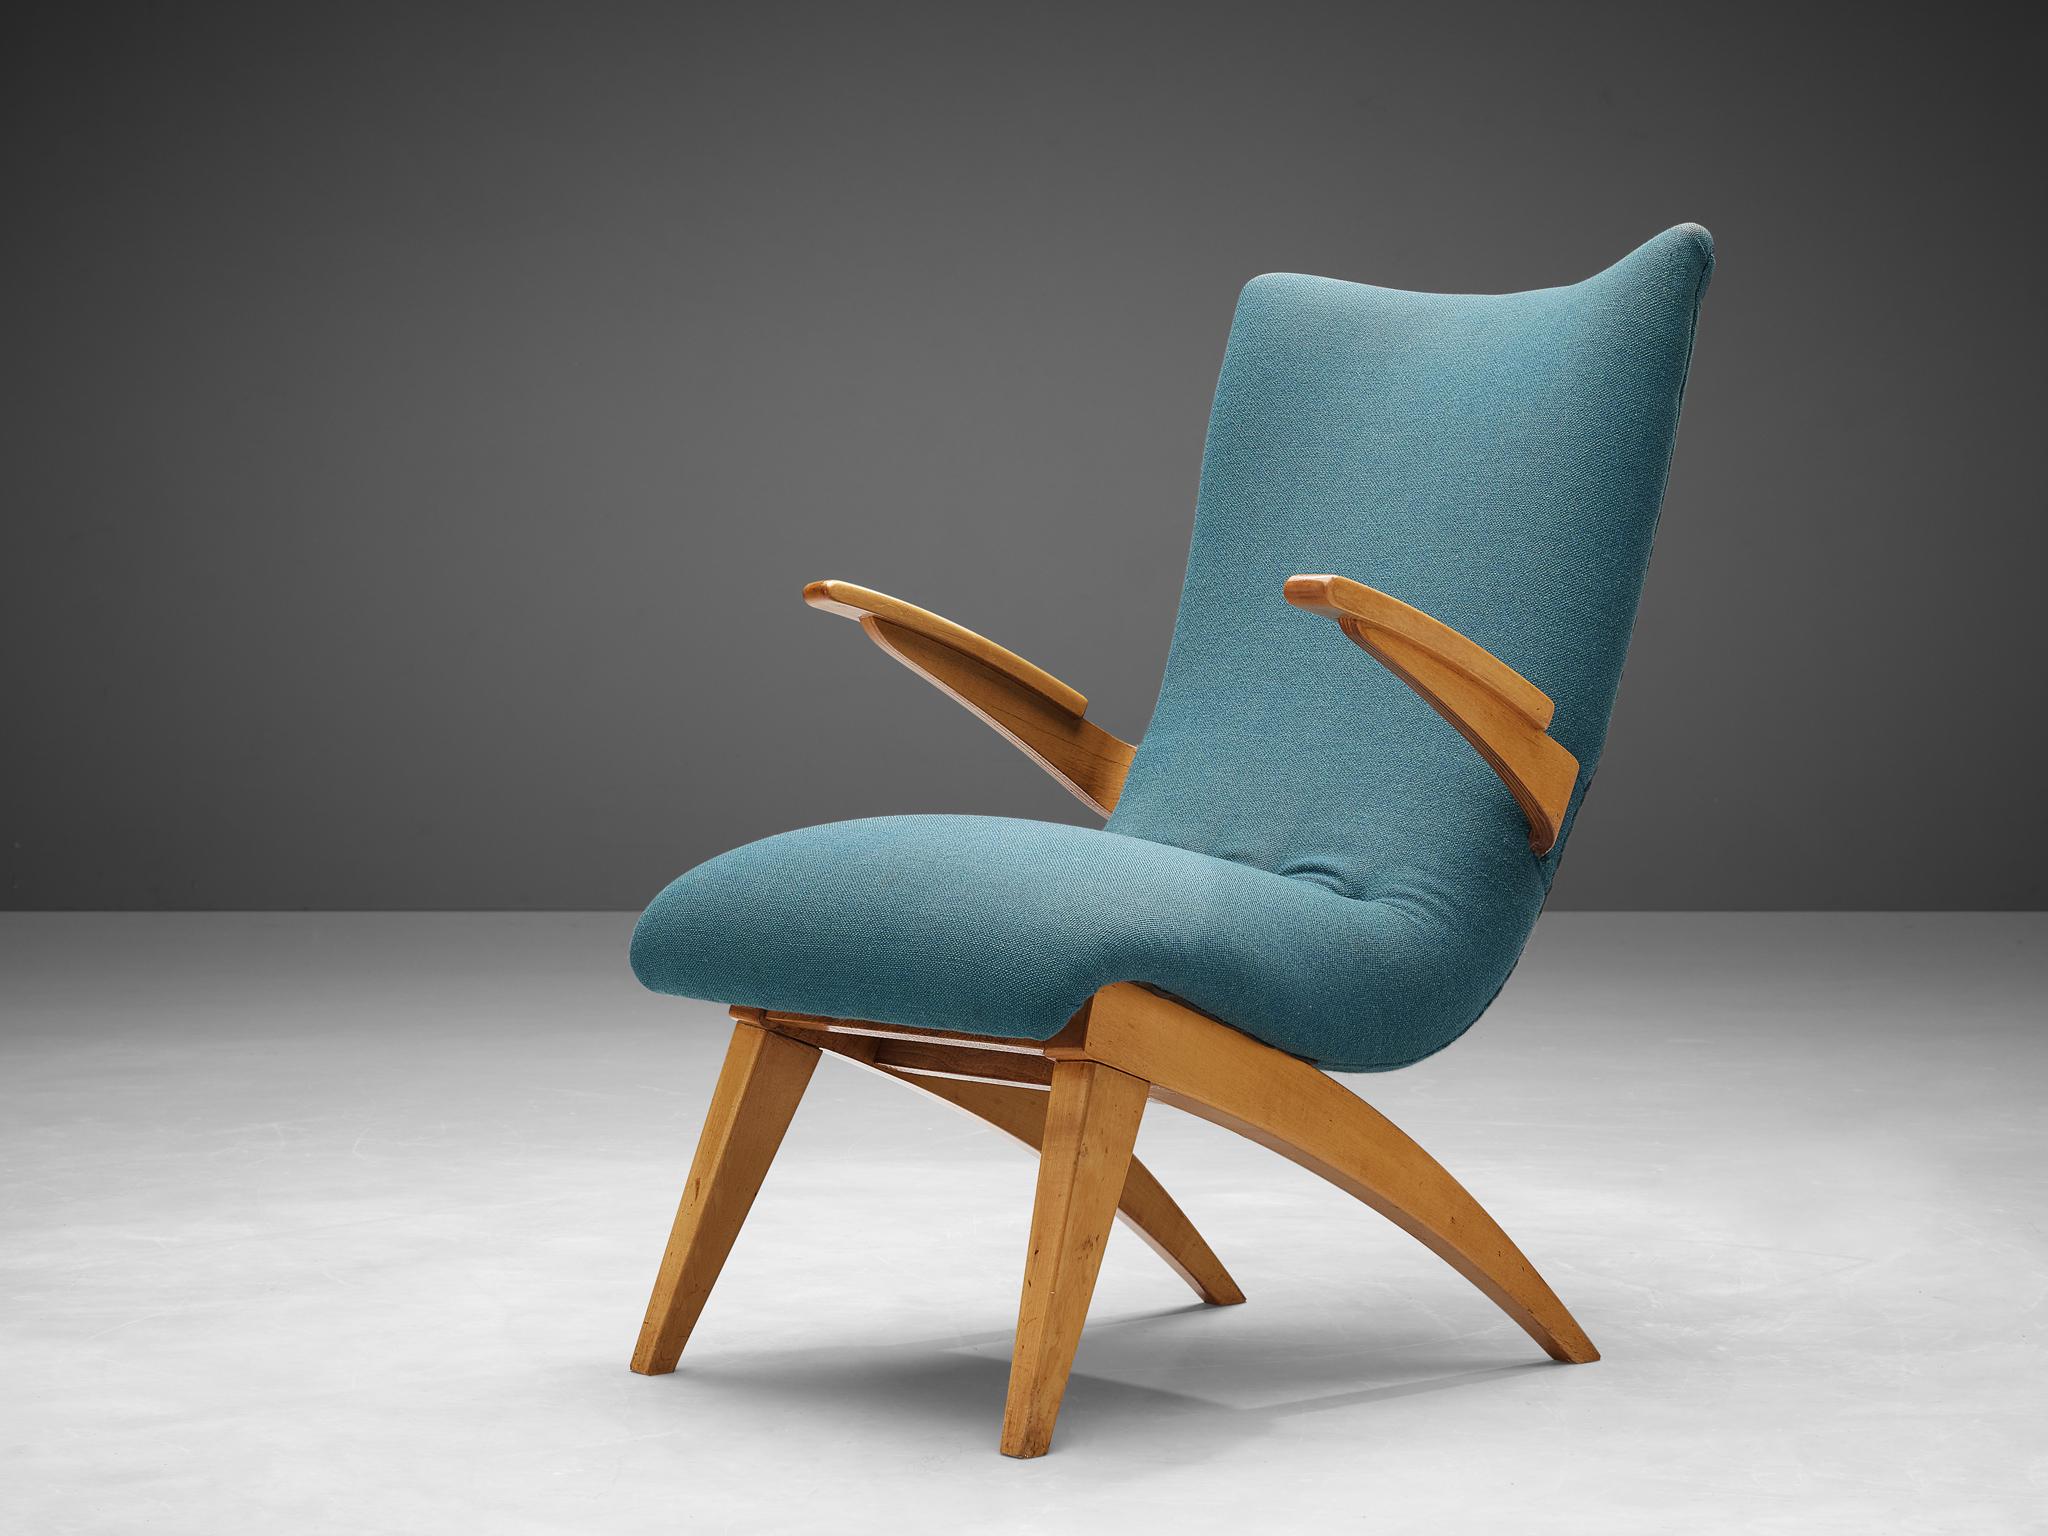 G. Van Os pour Van Os Culemborg, chaise longue, hêtre, tissu, Pays-Bas, années 1950

Ce fauteuil est conçu par G. Van Os aux Pays-Bas. La chaise longue, réalisée en hêtre et tapissée de tissu bleu, est dotée d'un dossier inclinable afin d'offrir un